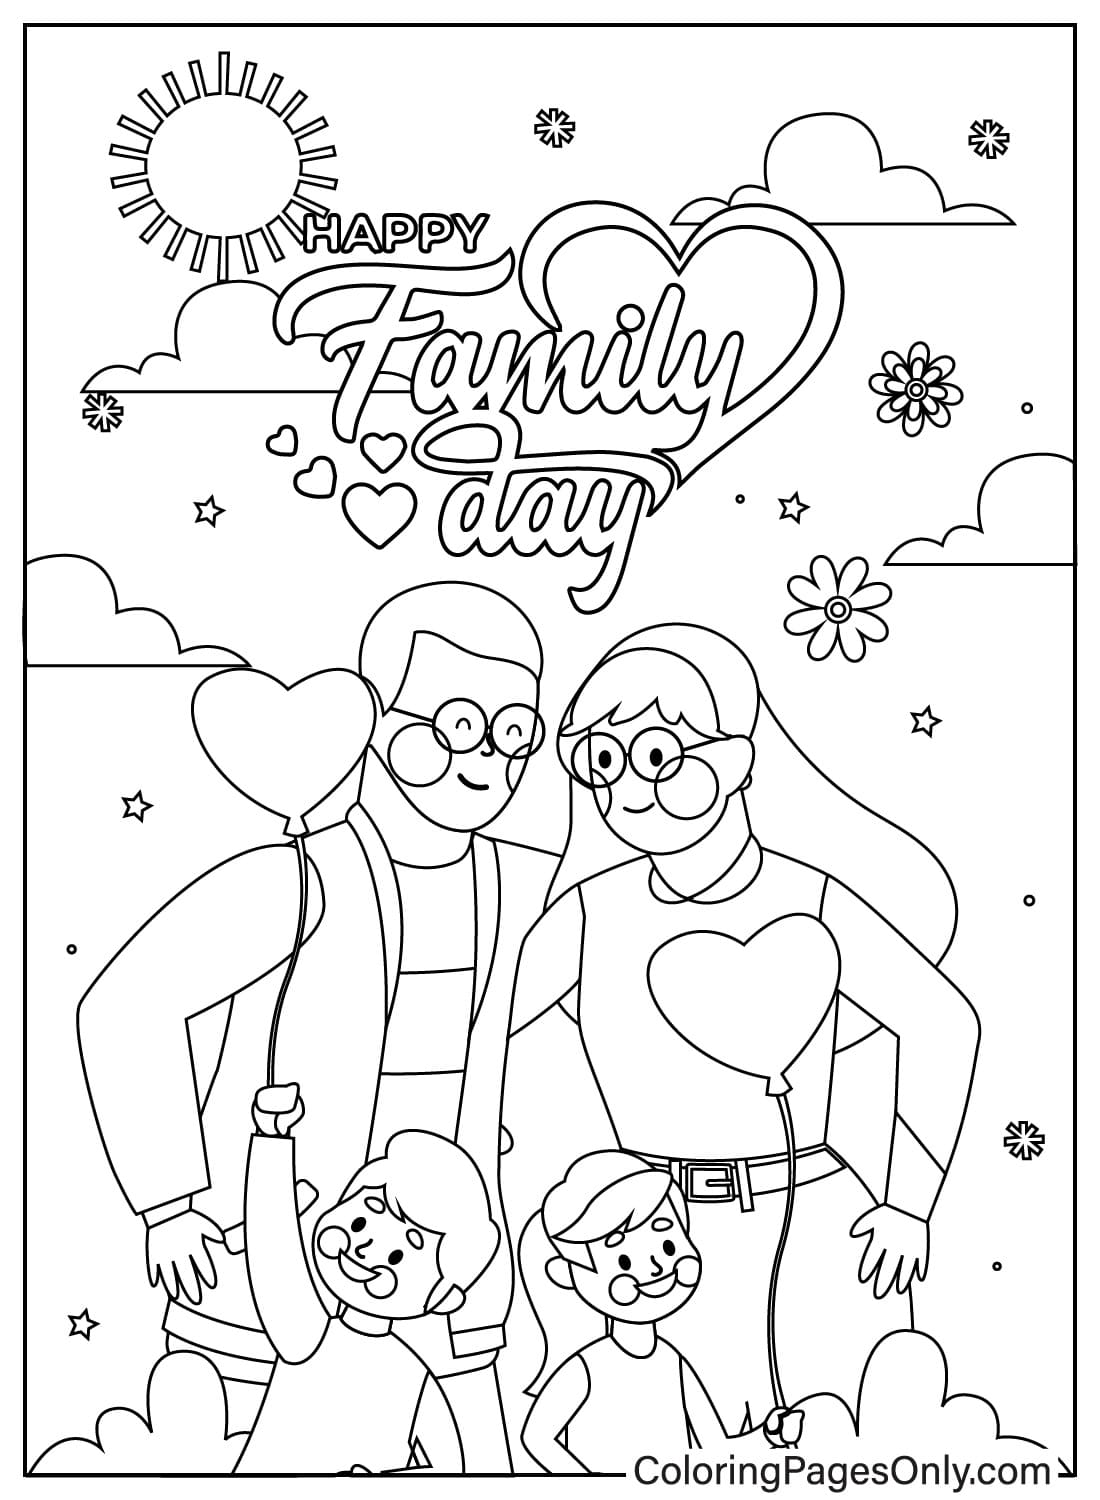 صفحة ملونة ليوم العائلة من يوم العائلة